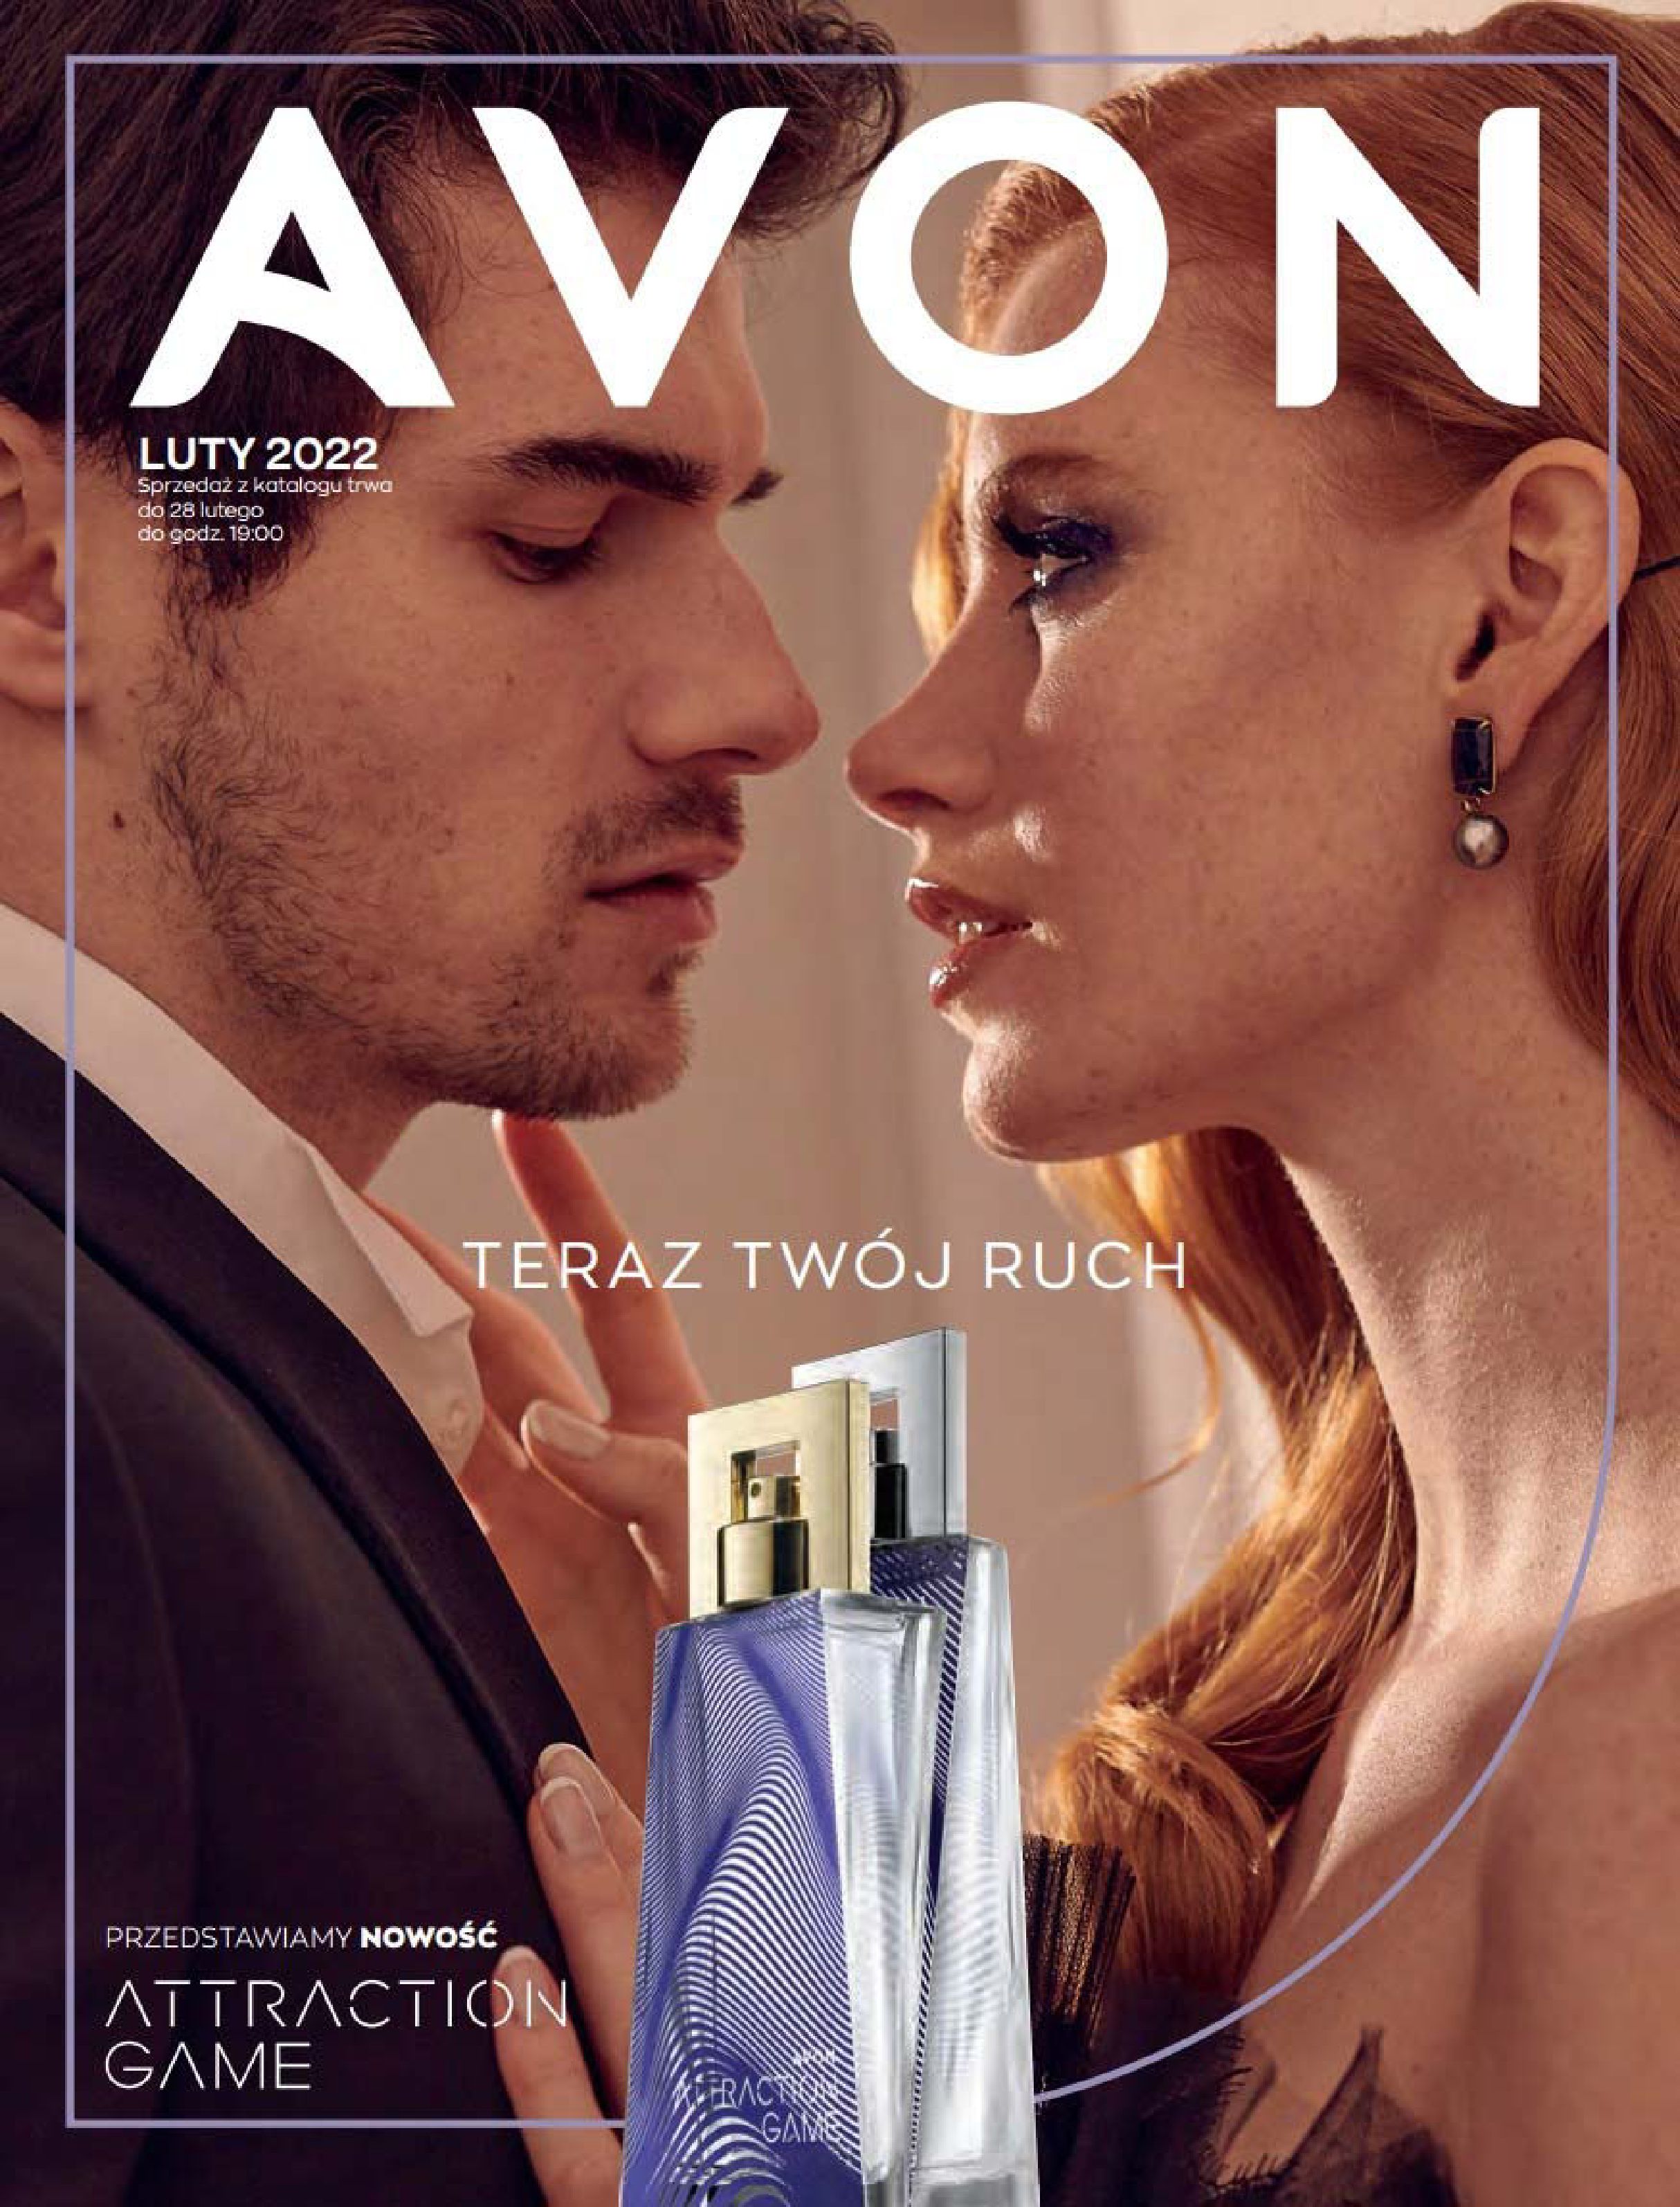 Gazetka Avon: Katalog Avon - LUTY 2022 2021-12-16 page-1